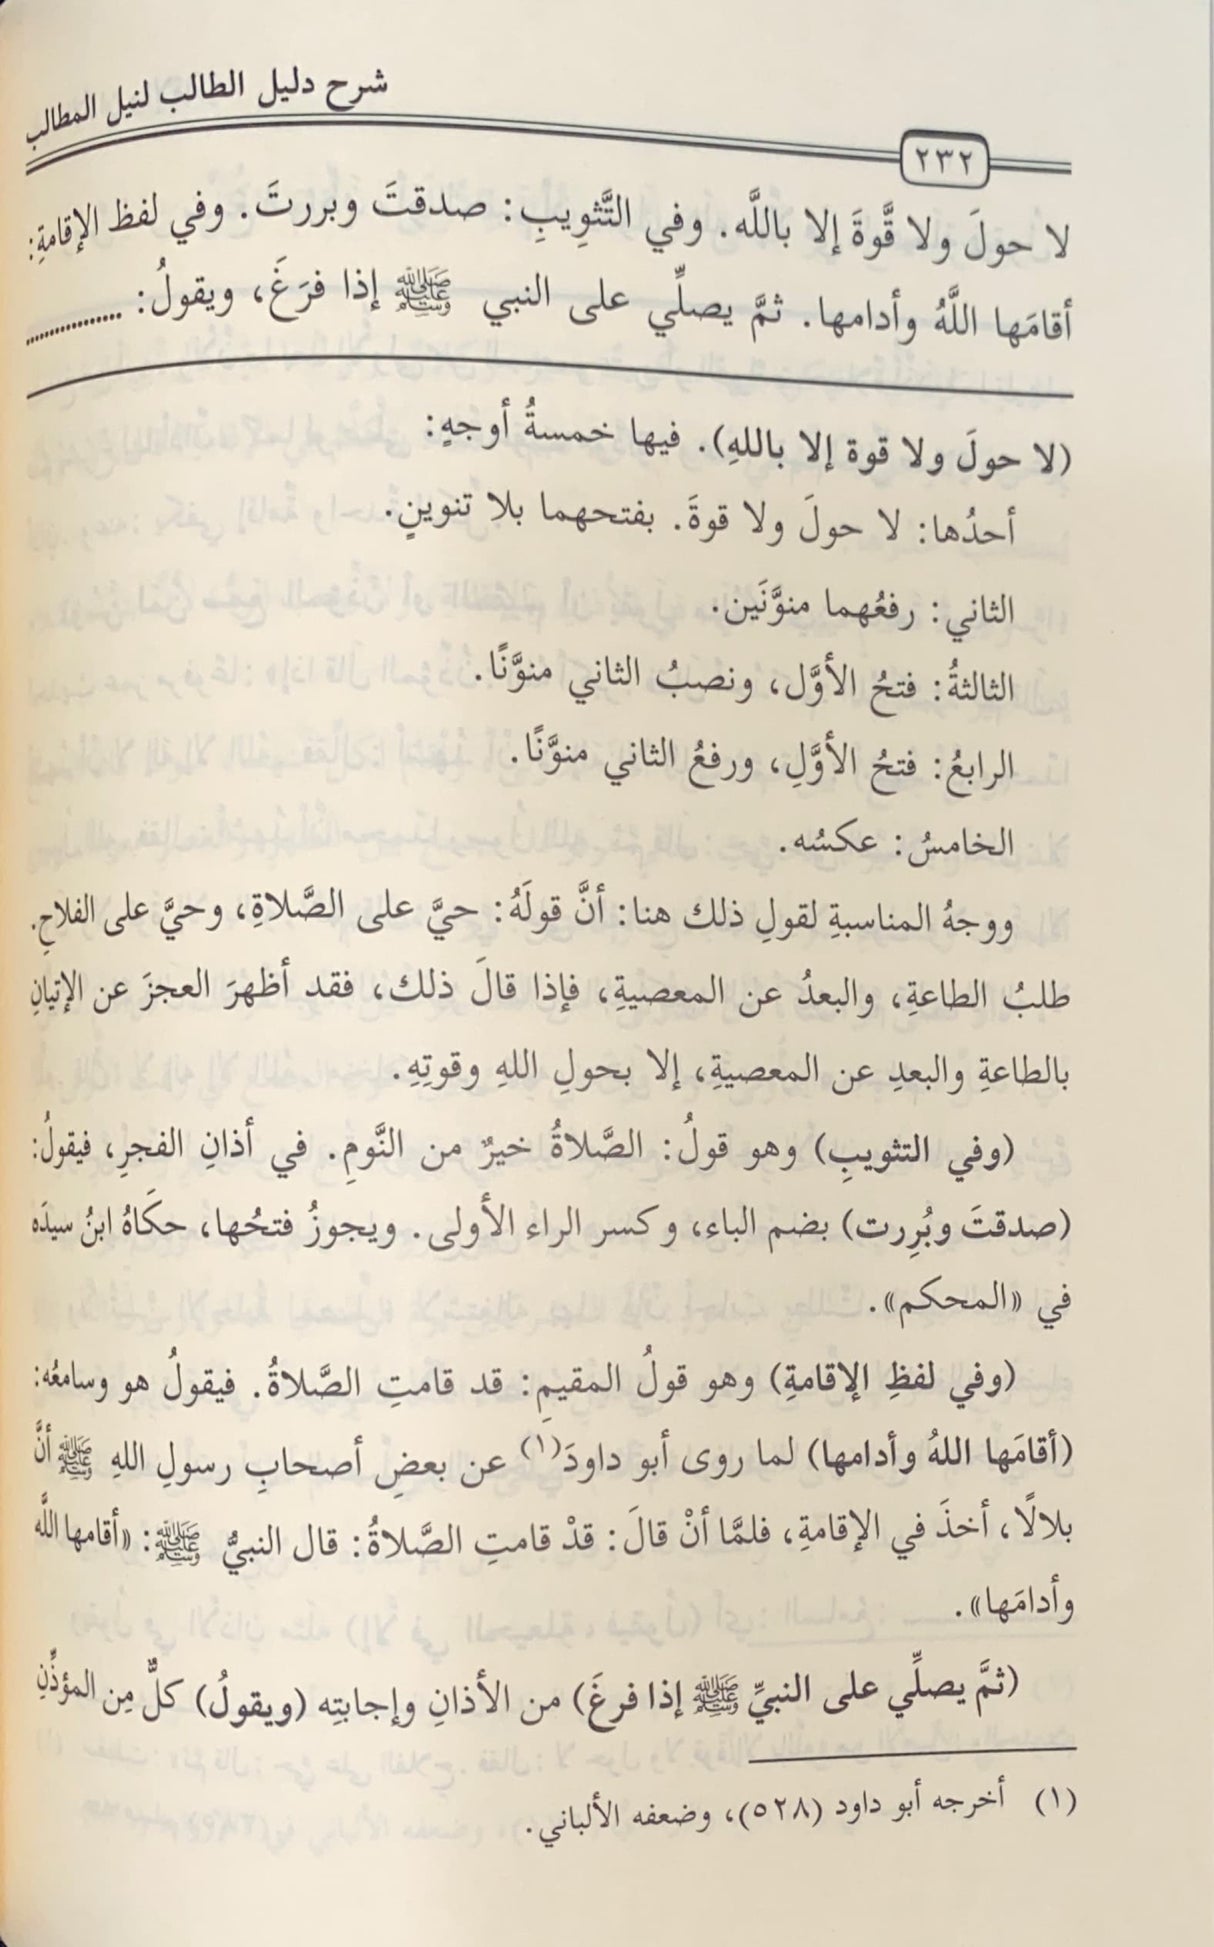 شرح دليل الطالب لنيل المطالب Sharh Daleel At Talib (3 Volume Set)